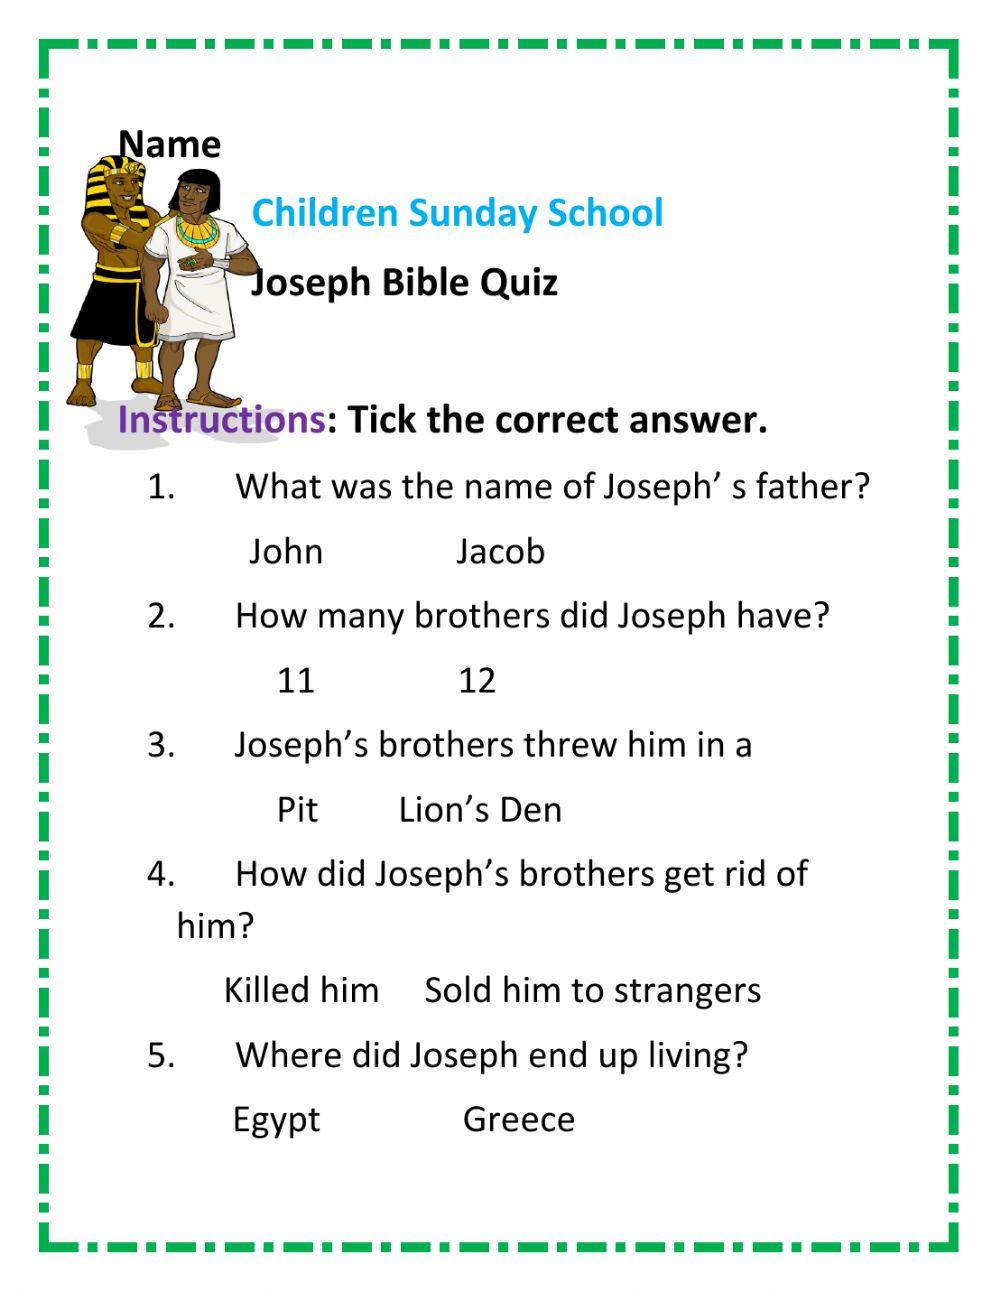 Joseph Bible Quiz